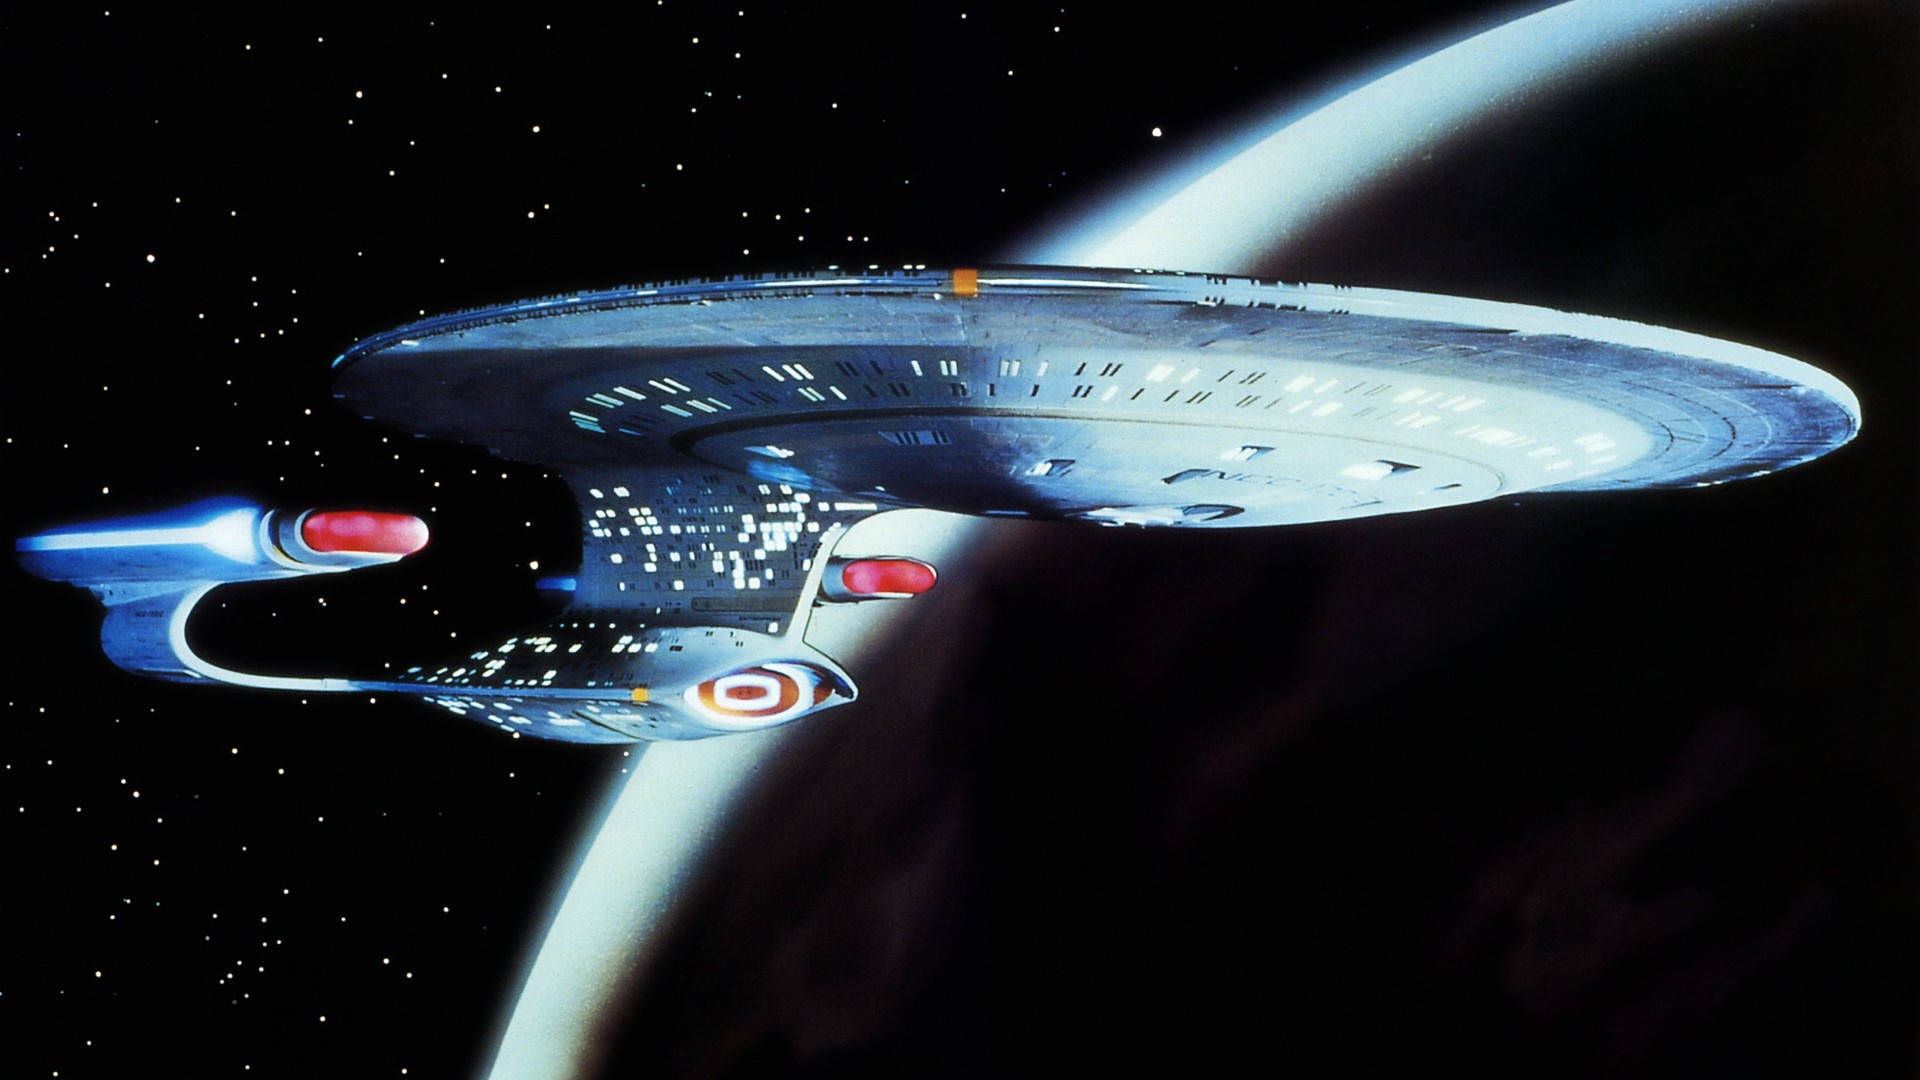 Fondode Escritorio De Alta Calidad De La Nave Espacial De Star Trek. Fondo de pantalla